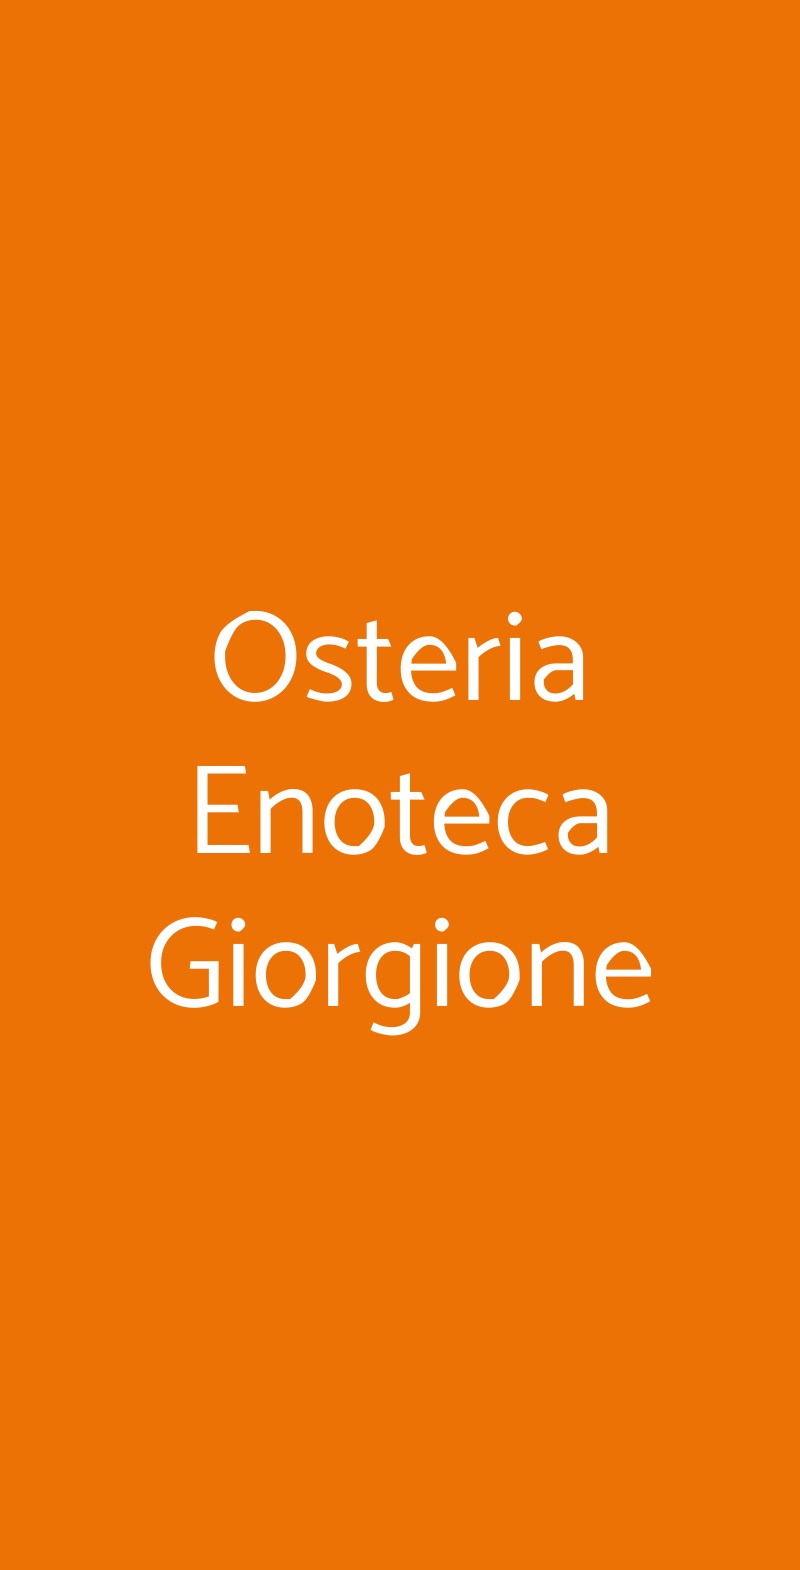 Osteria Enoteca Giorgione Venezia menù 1 pagina